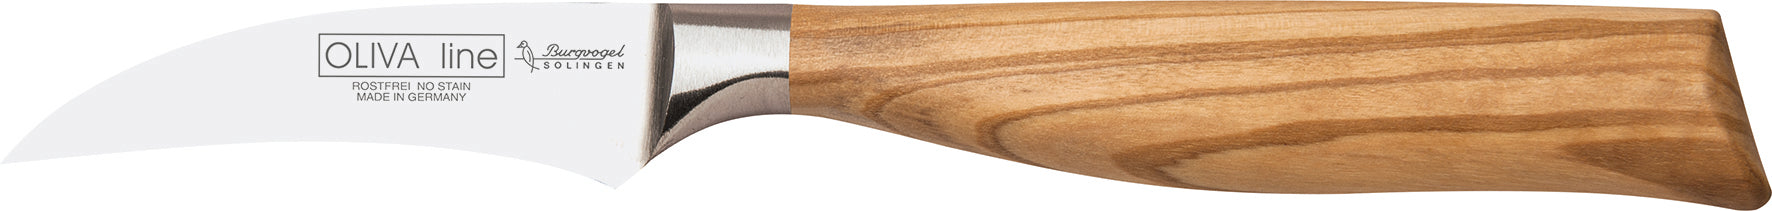 Schälmesser Tourniermesser mit Olivenholz Griff, gebogene Klinge 7cm